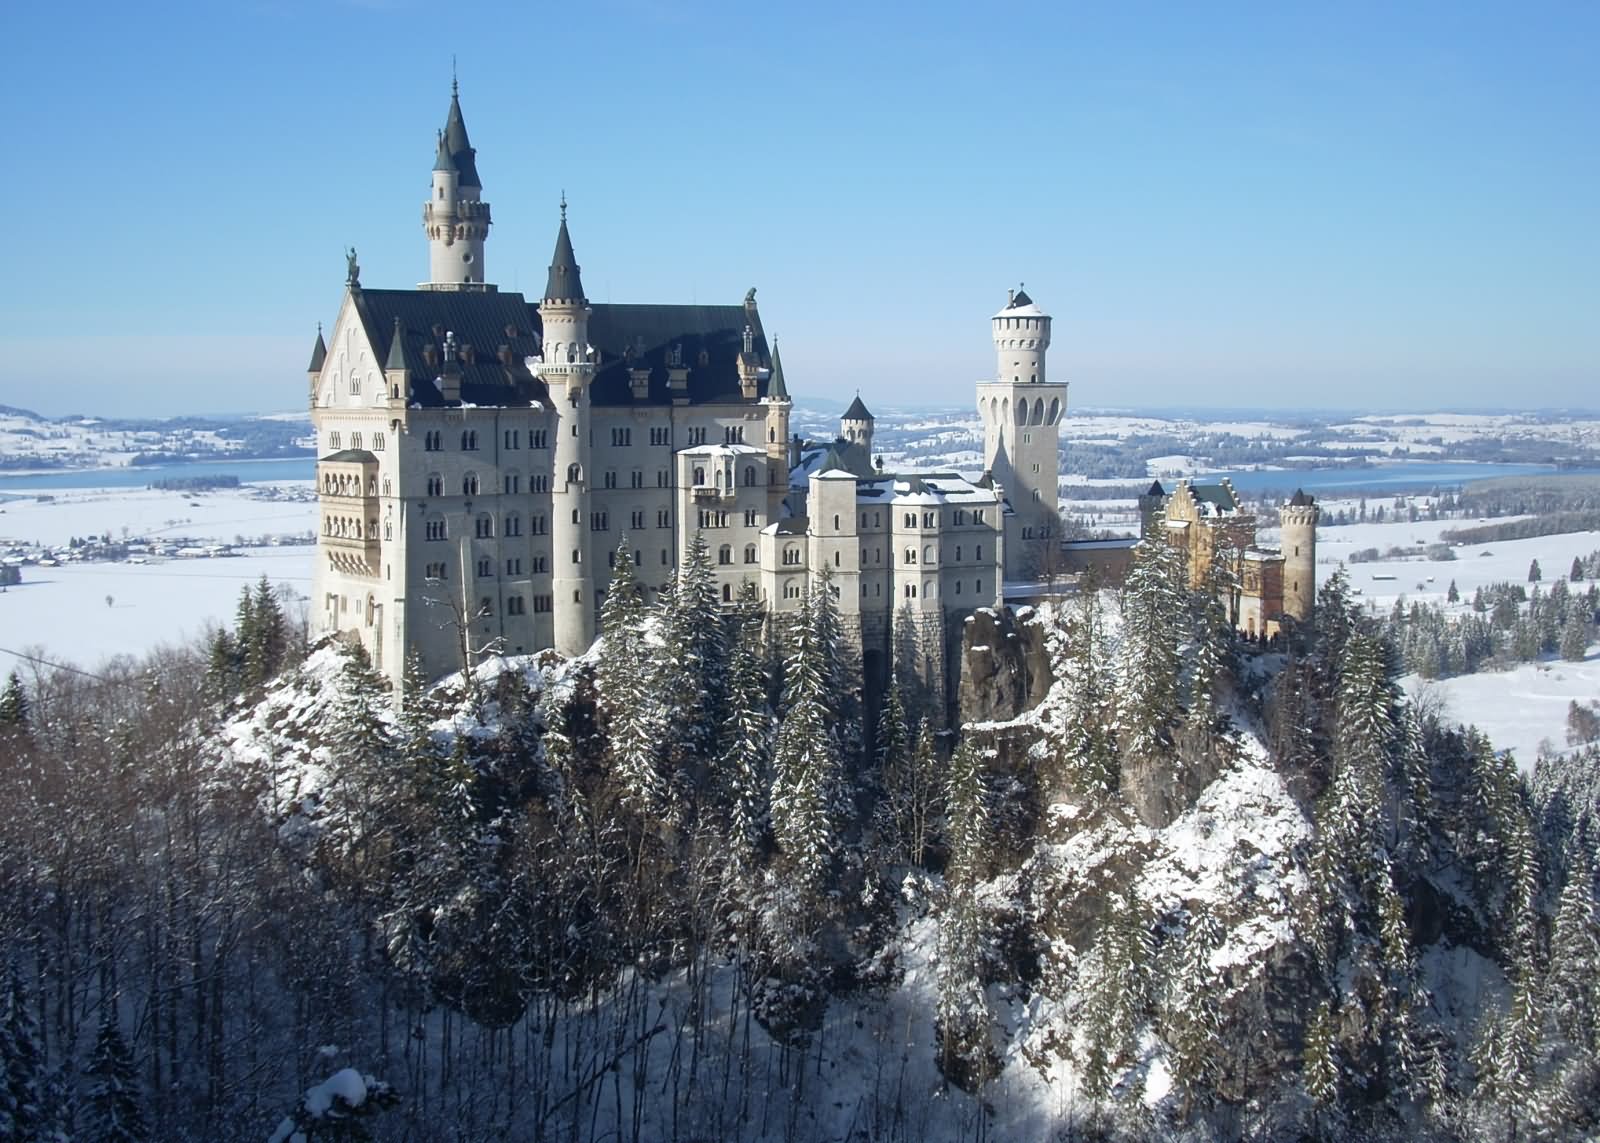 The Neuschwanstein Castle Winter View